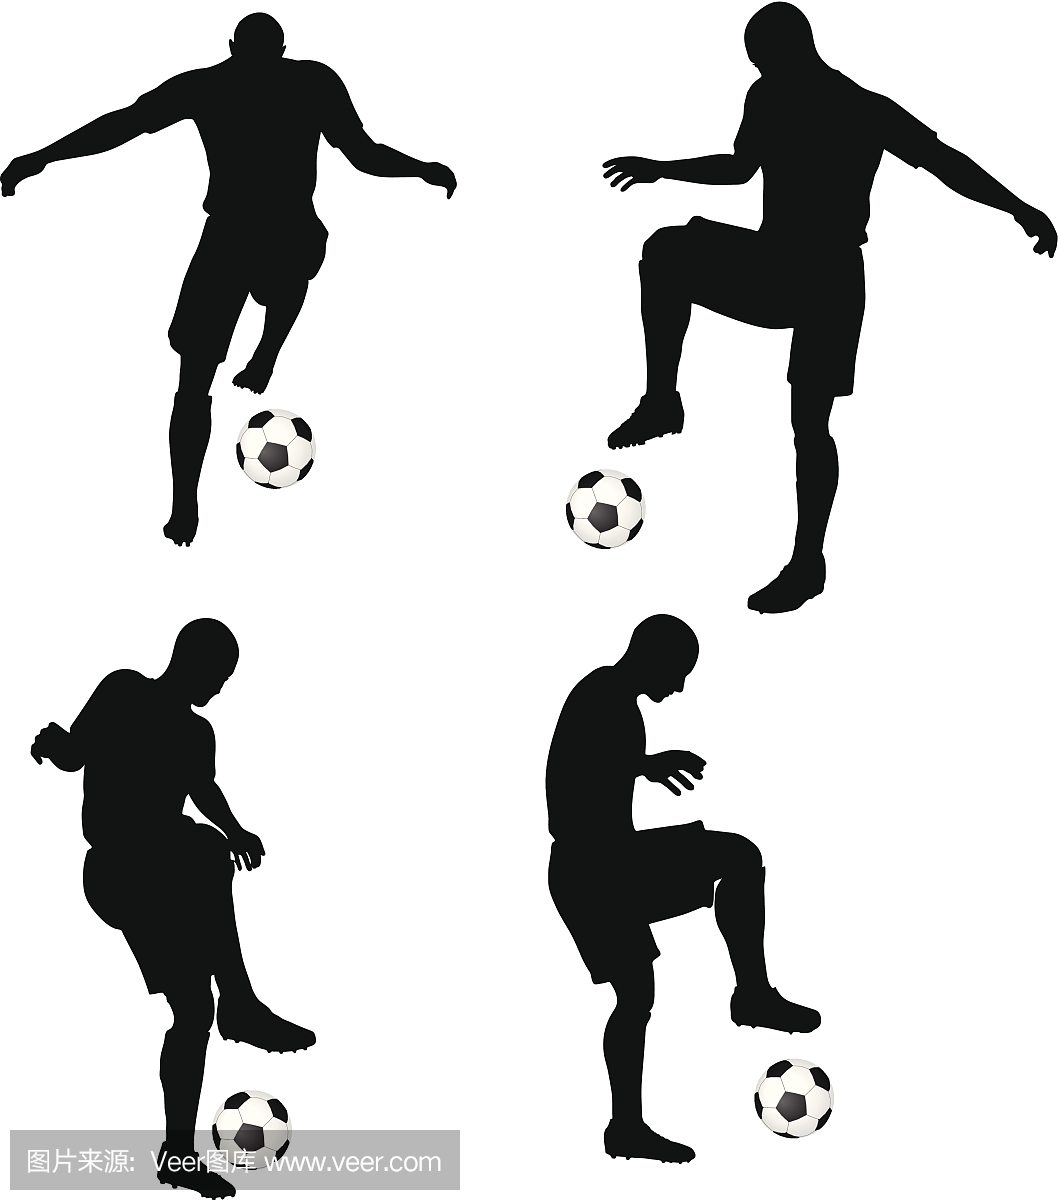 姿势的足球运动员轮廓在运球位置